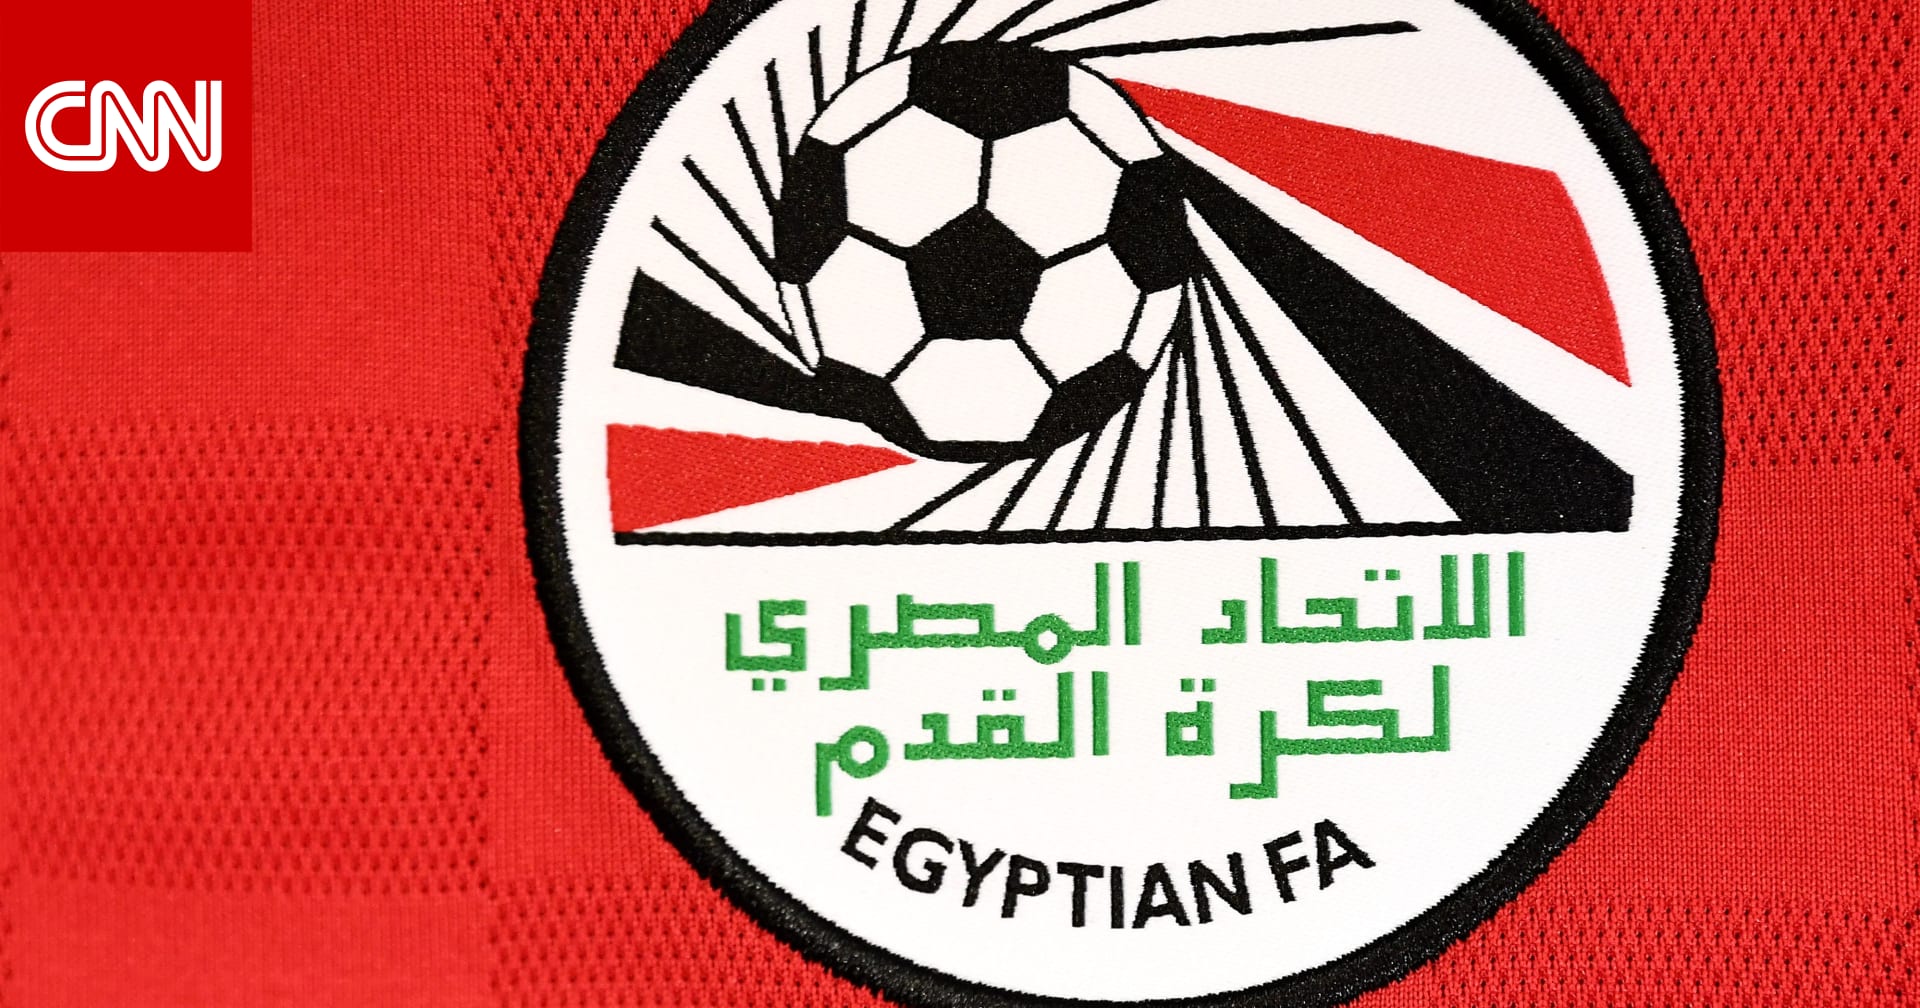 كيف رد اتحاد الكرة المصري على “نصيحة” فيفبرو بعدم التعاقد مع الأندية المصرية؟